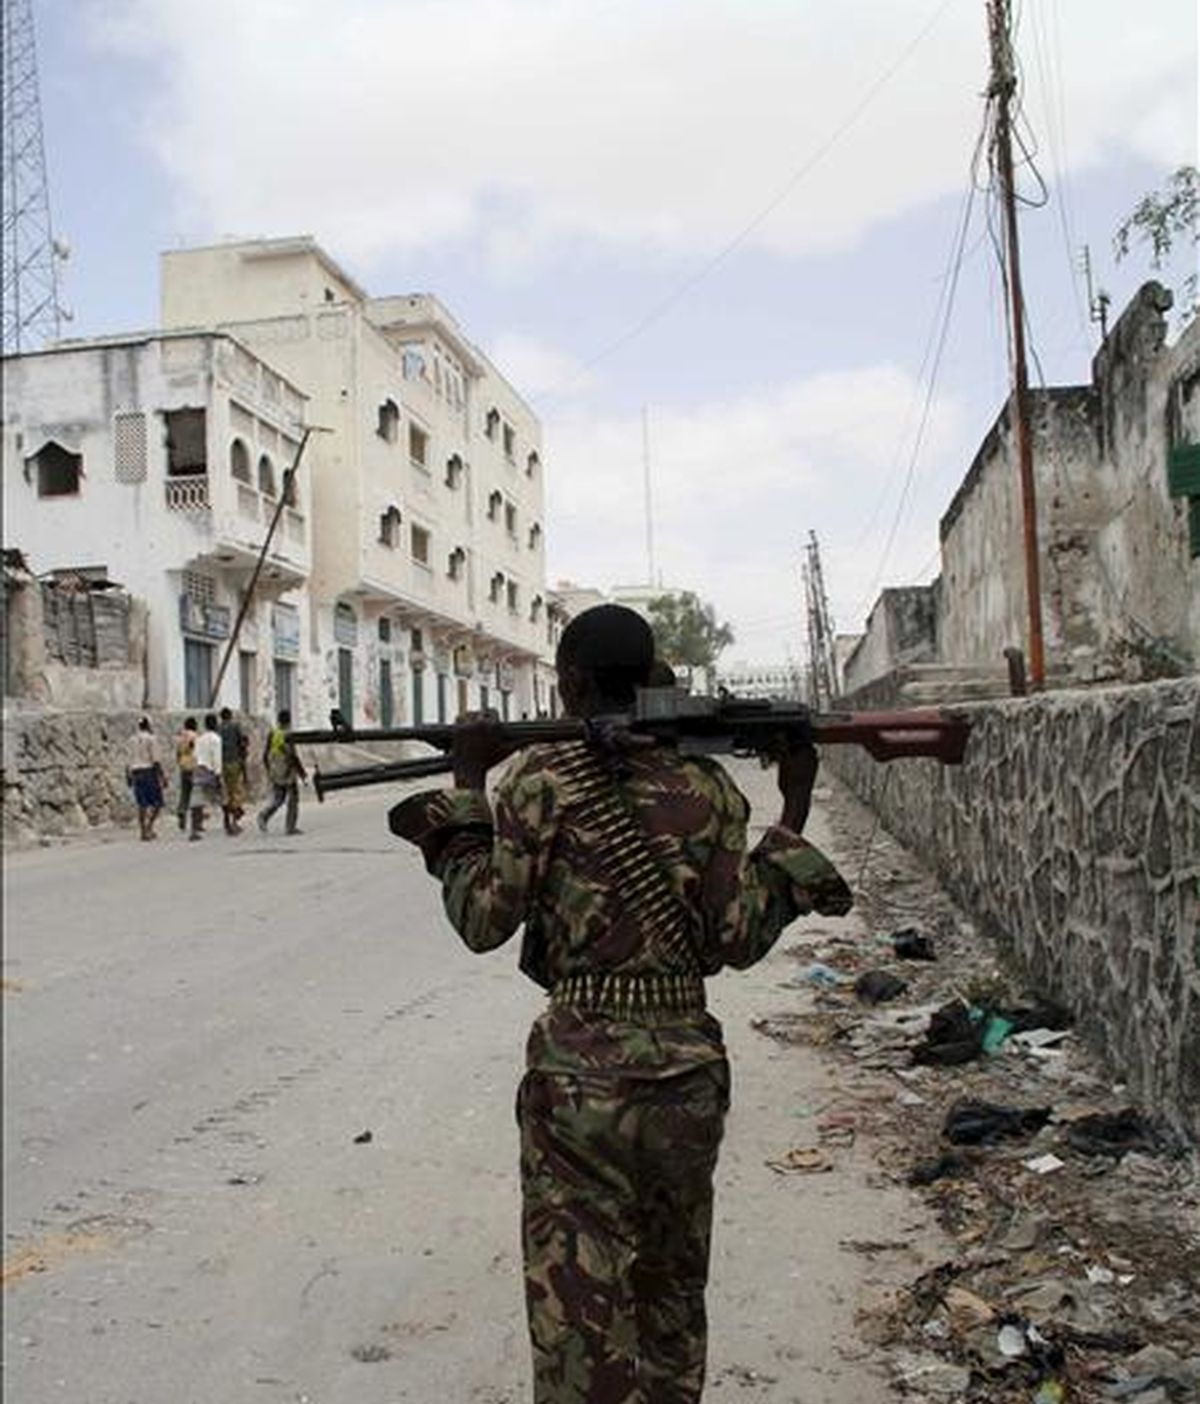 Un miembro de las tropas de la Misión de la Unión Africana en Somalia (AMISOM) durante un combate con insurgentes de Al Shabab -milicia local vinculada a Al Qaeda- en Mogadiscio (Somalia), hel pasado mes de marzo. EFE/Archivo